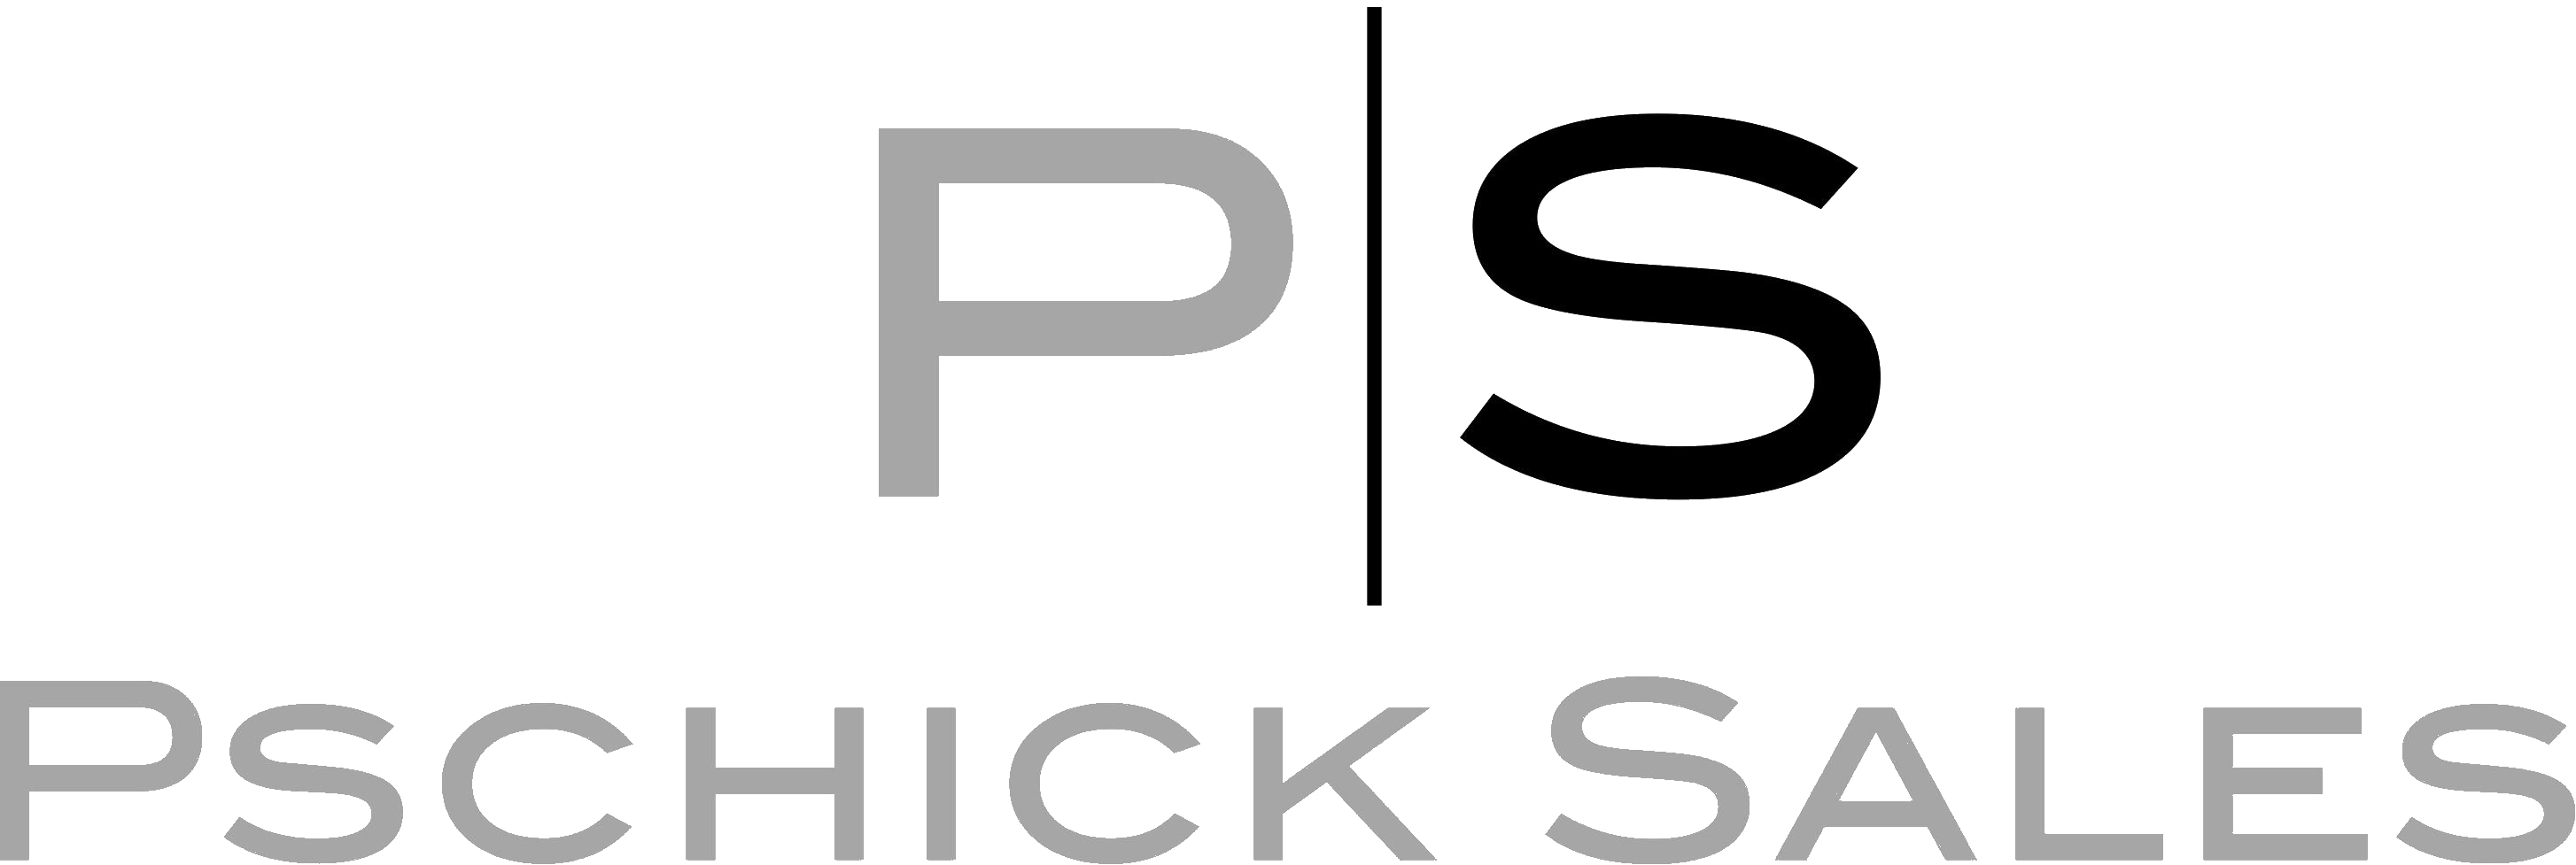 Pschick Sales